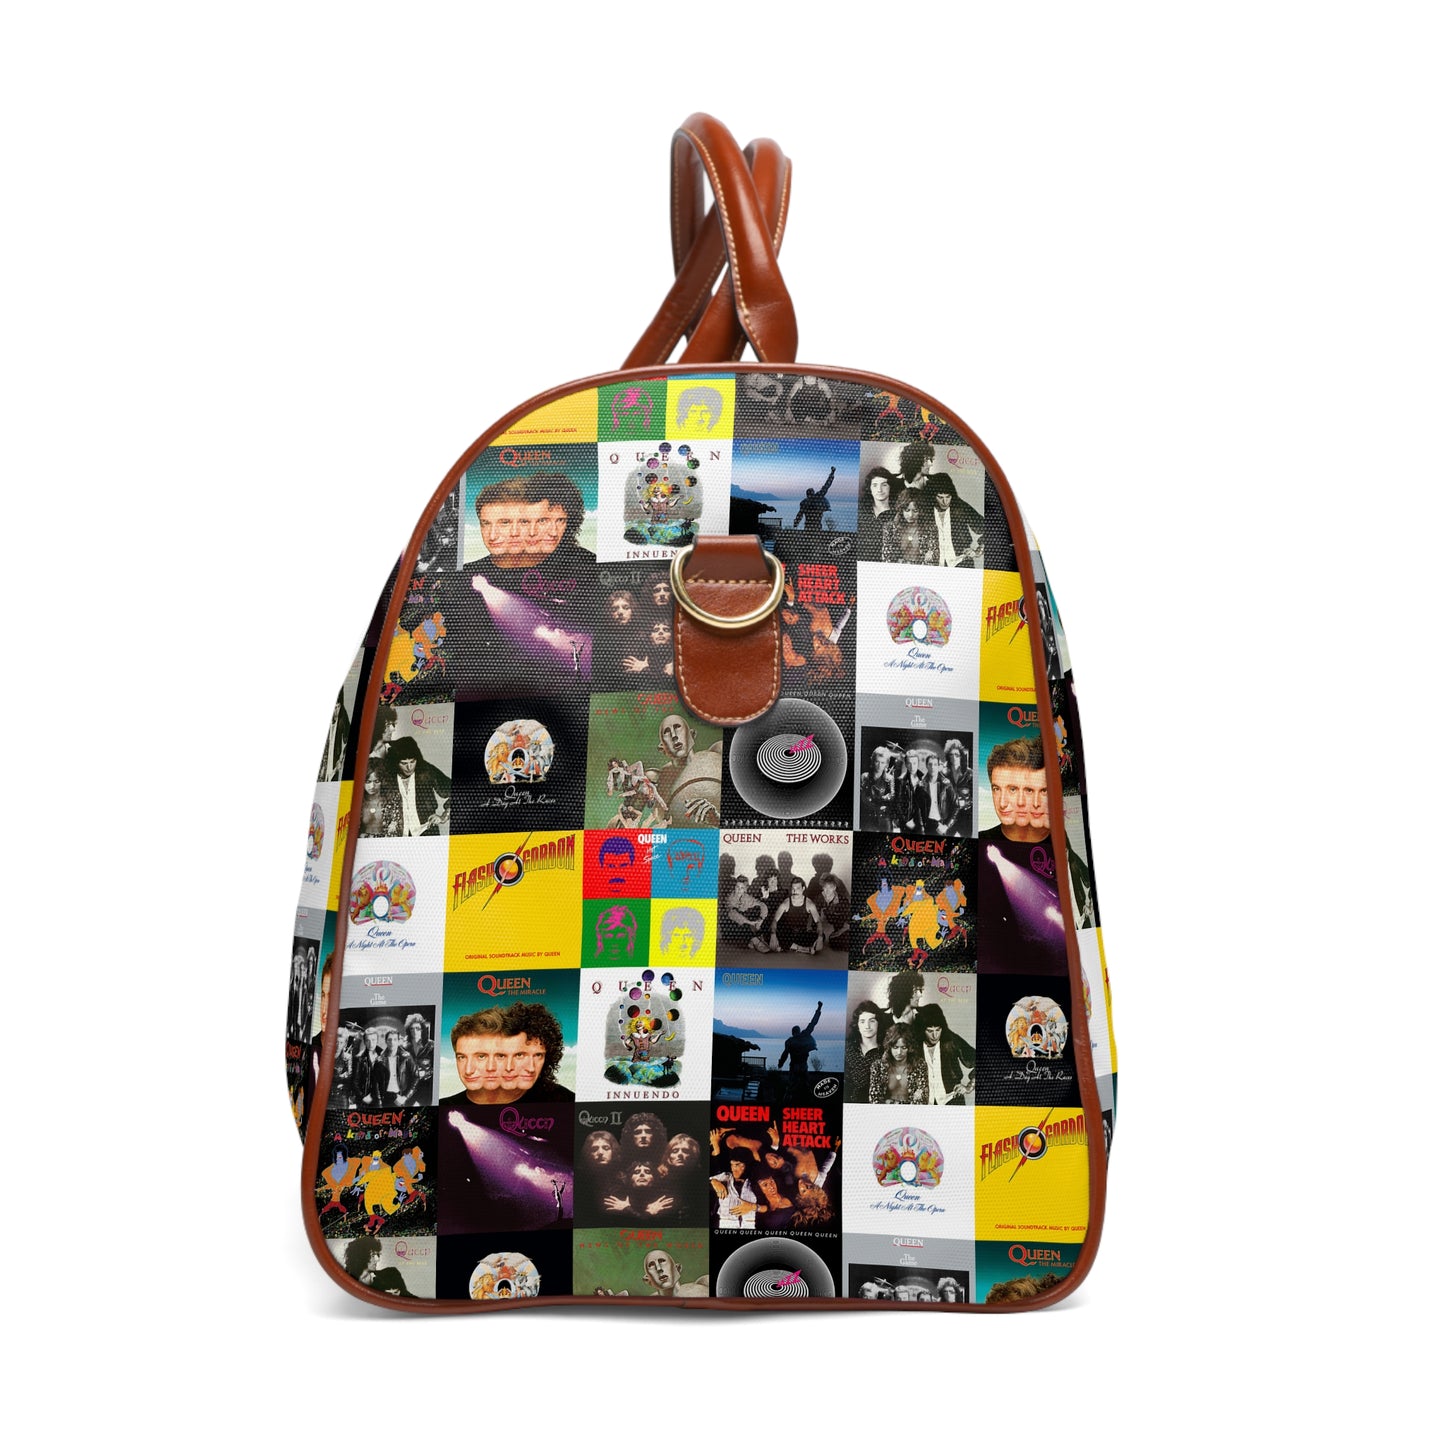 Queen Album Cover Collage Waterproof Travel Bag